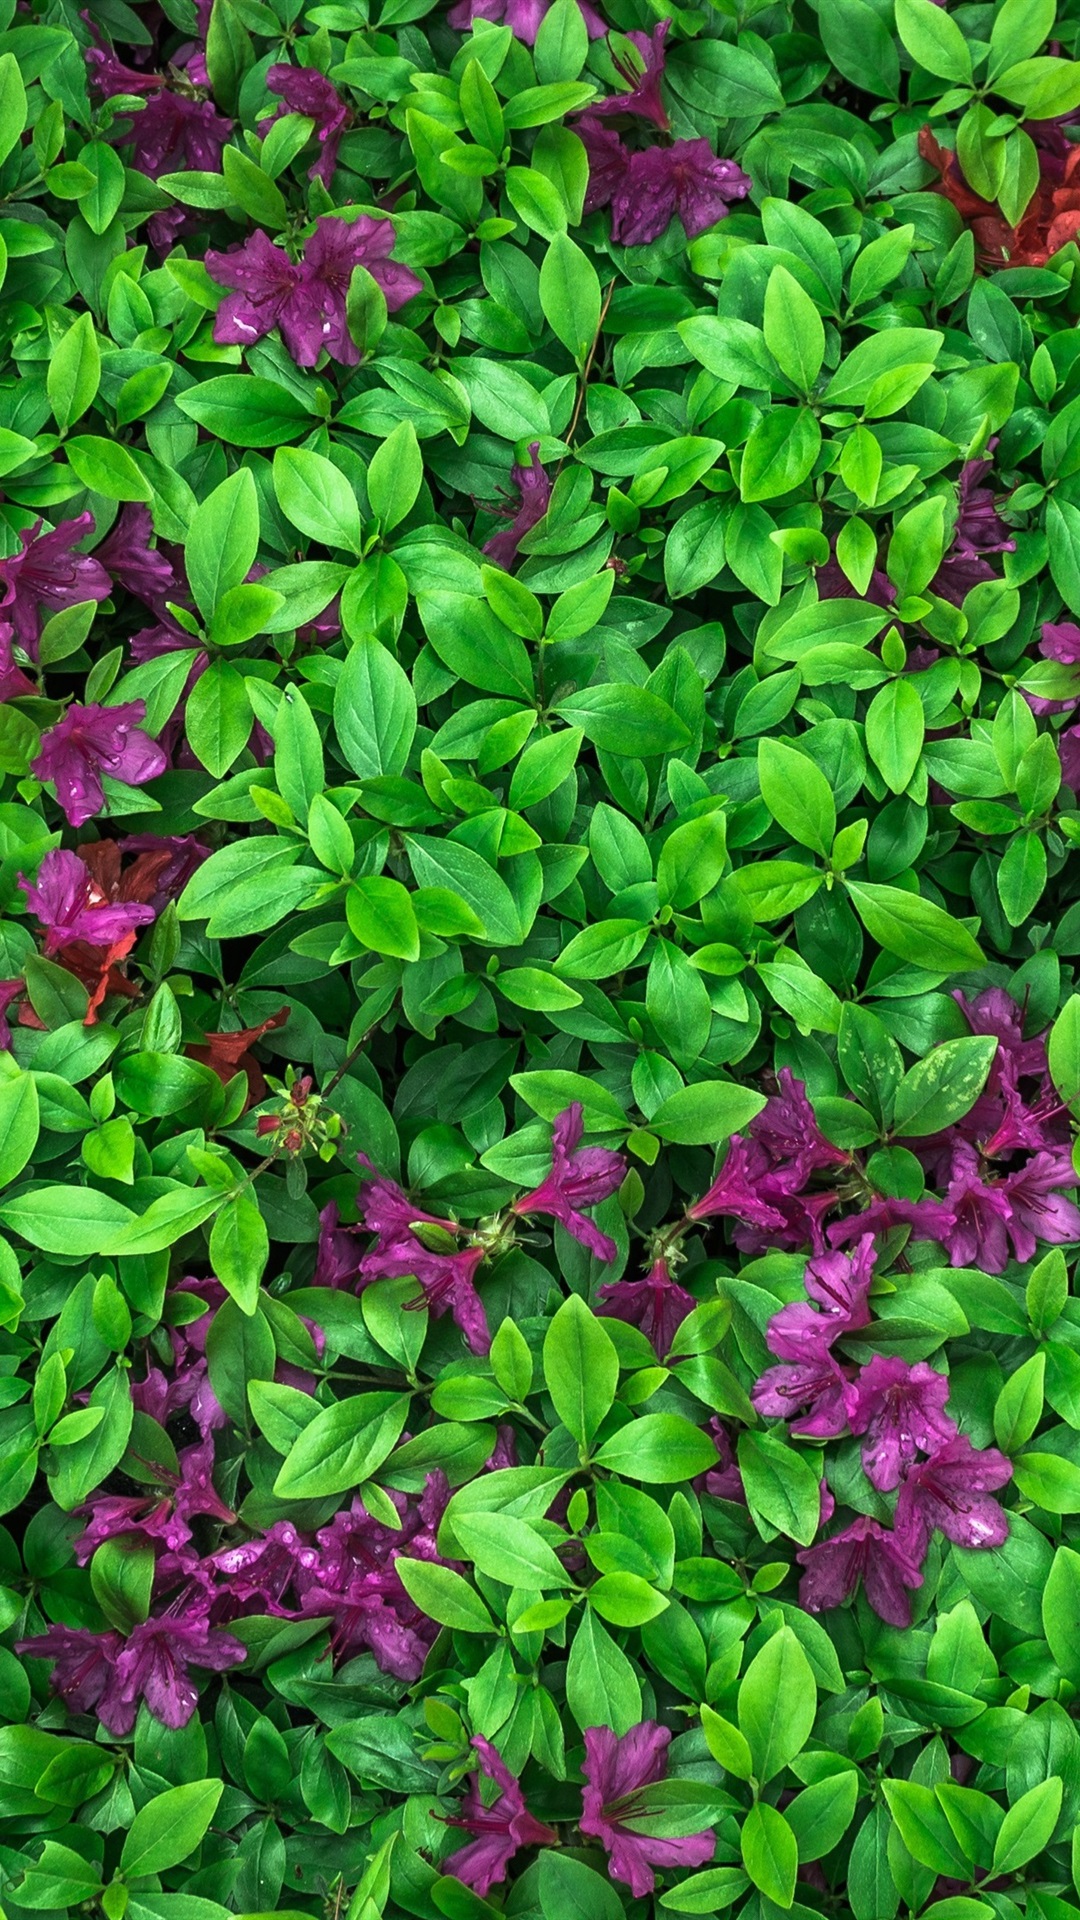 Iphone Wallpaper Azalea, Green Leaves, Purple Flowers - Green Wallpaper Iphone Leaves - HD Wallpaper 